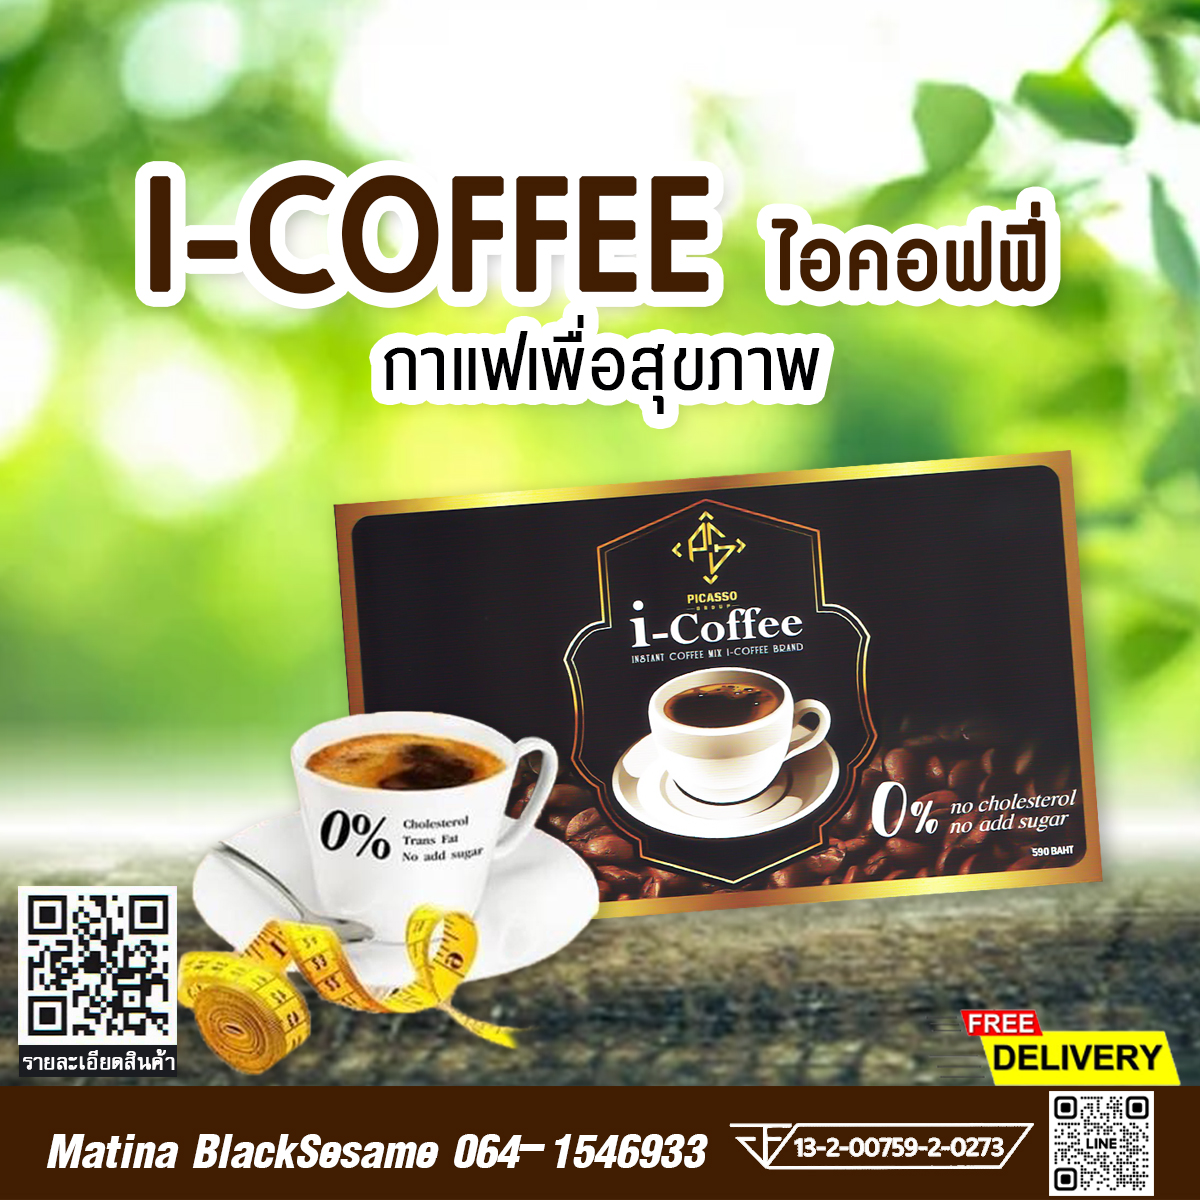 I-COFFEE กาแฟเพื่อสุขภาพ ที่เป็นมากกว่ากาแฟ